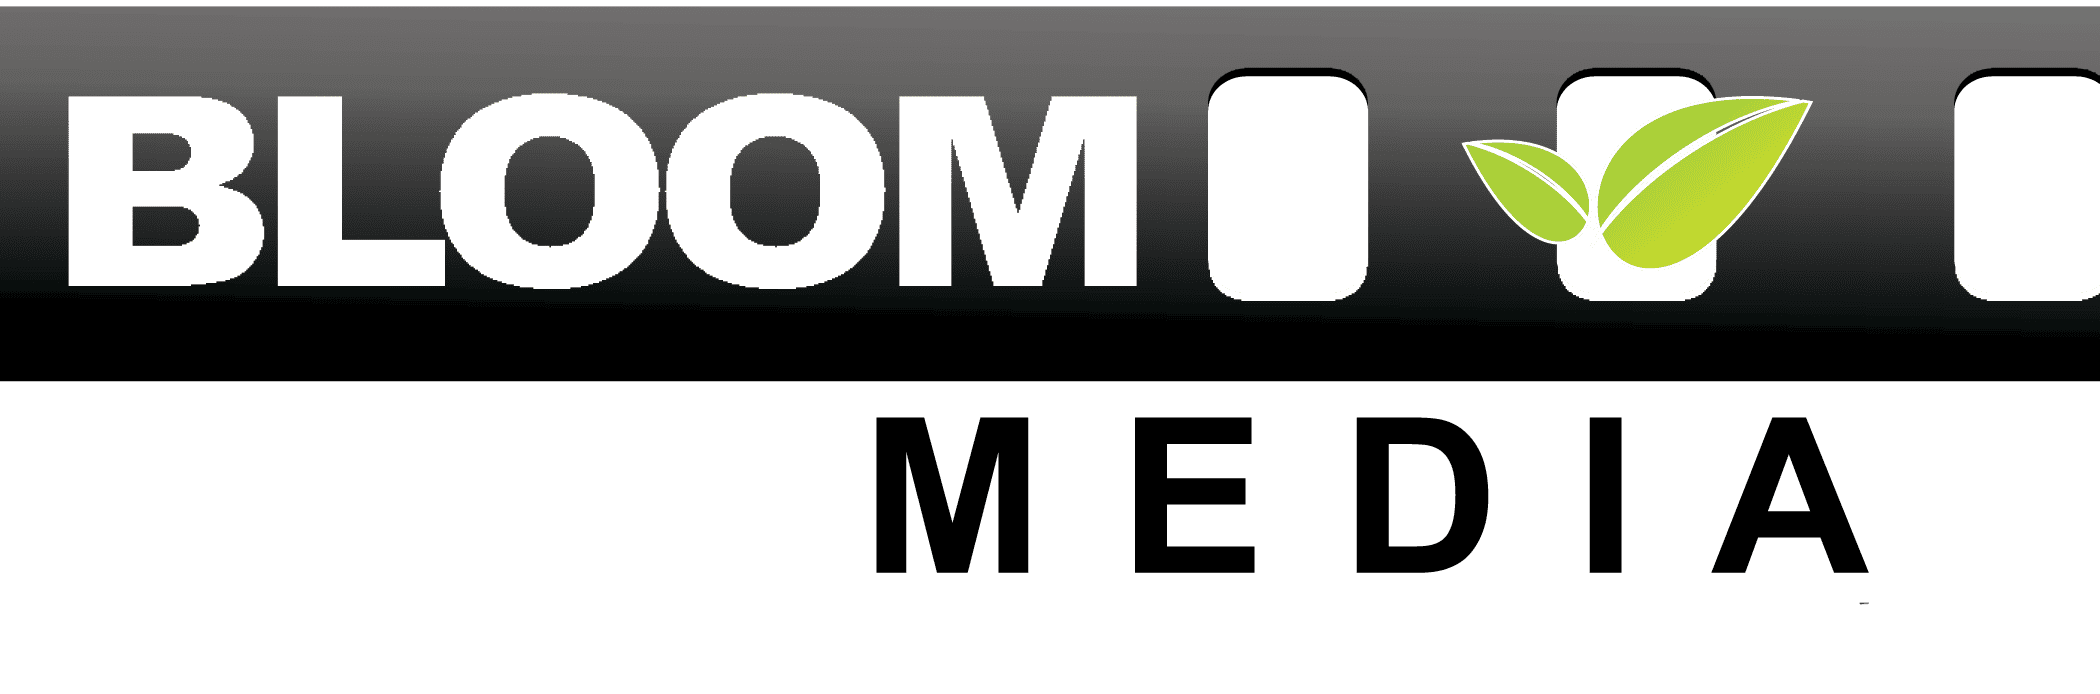 Bloom Media website Logo